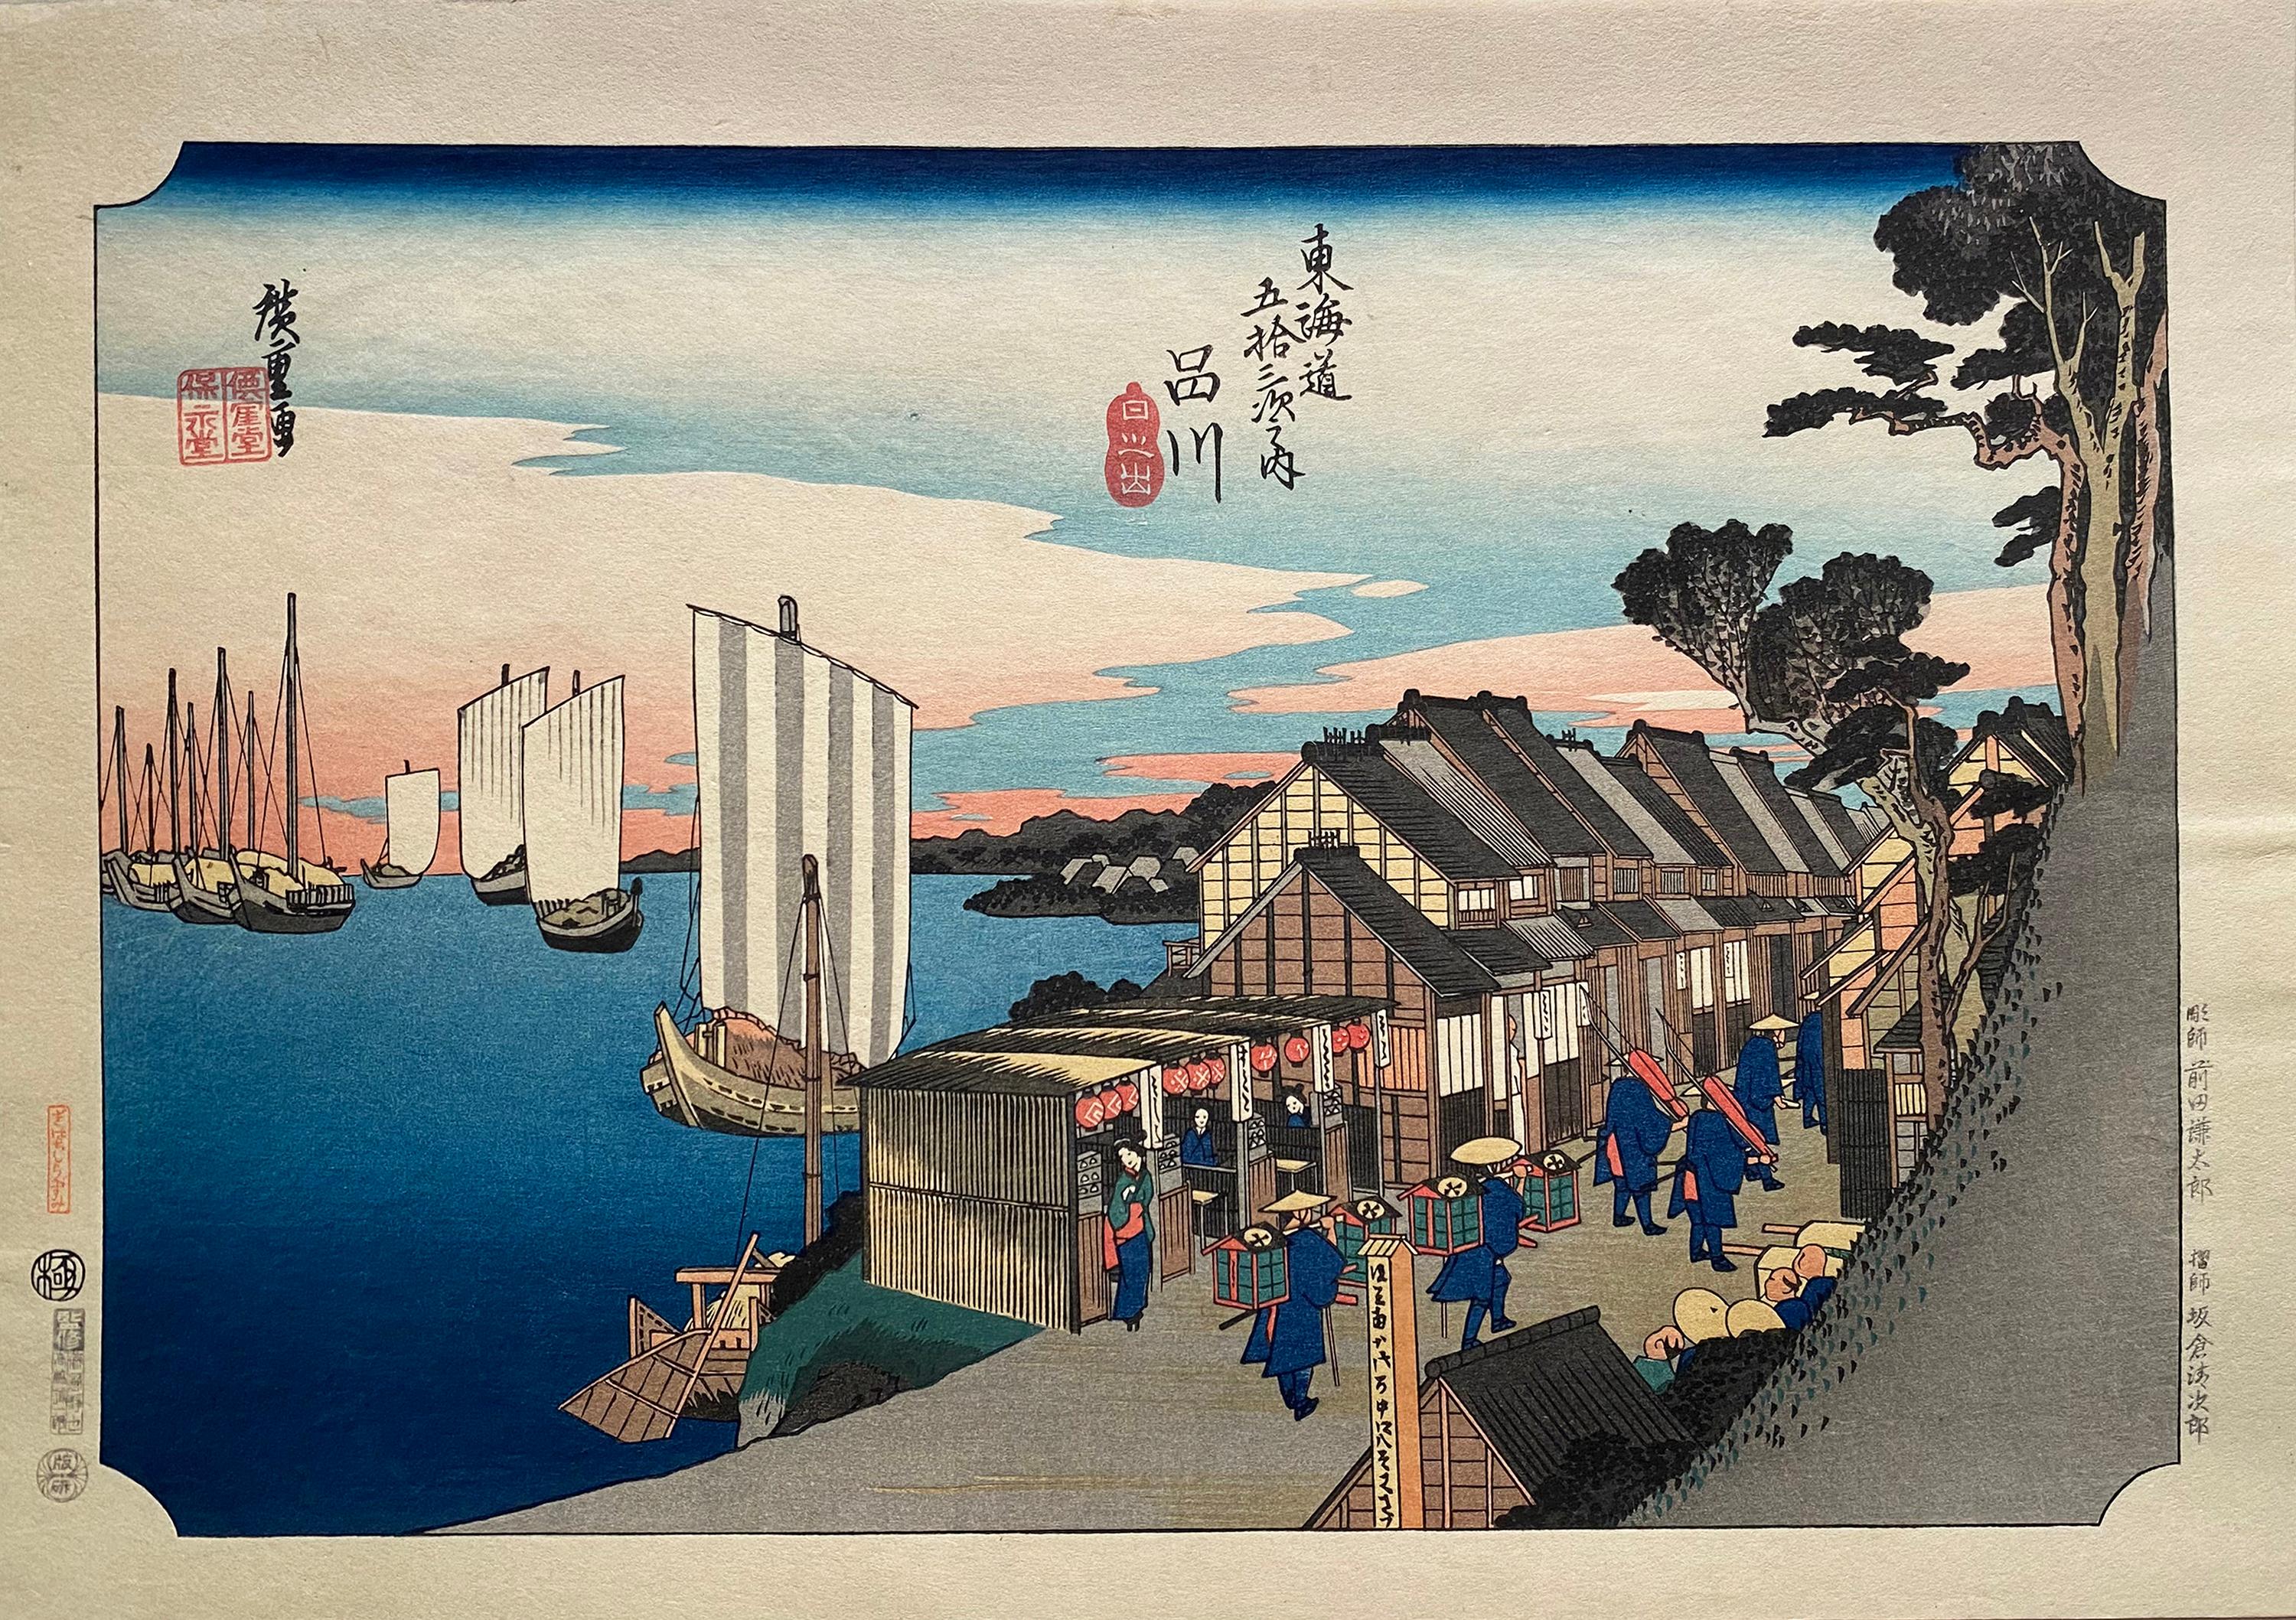 'Shinagawa Sunrise', After Utagawa Hiroshige 歌川廣重, Ukiyo-e Woodblock, Tokaido - Print by Utagawa Hiroshige (Ando Hiroshige)